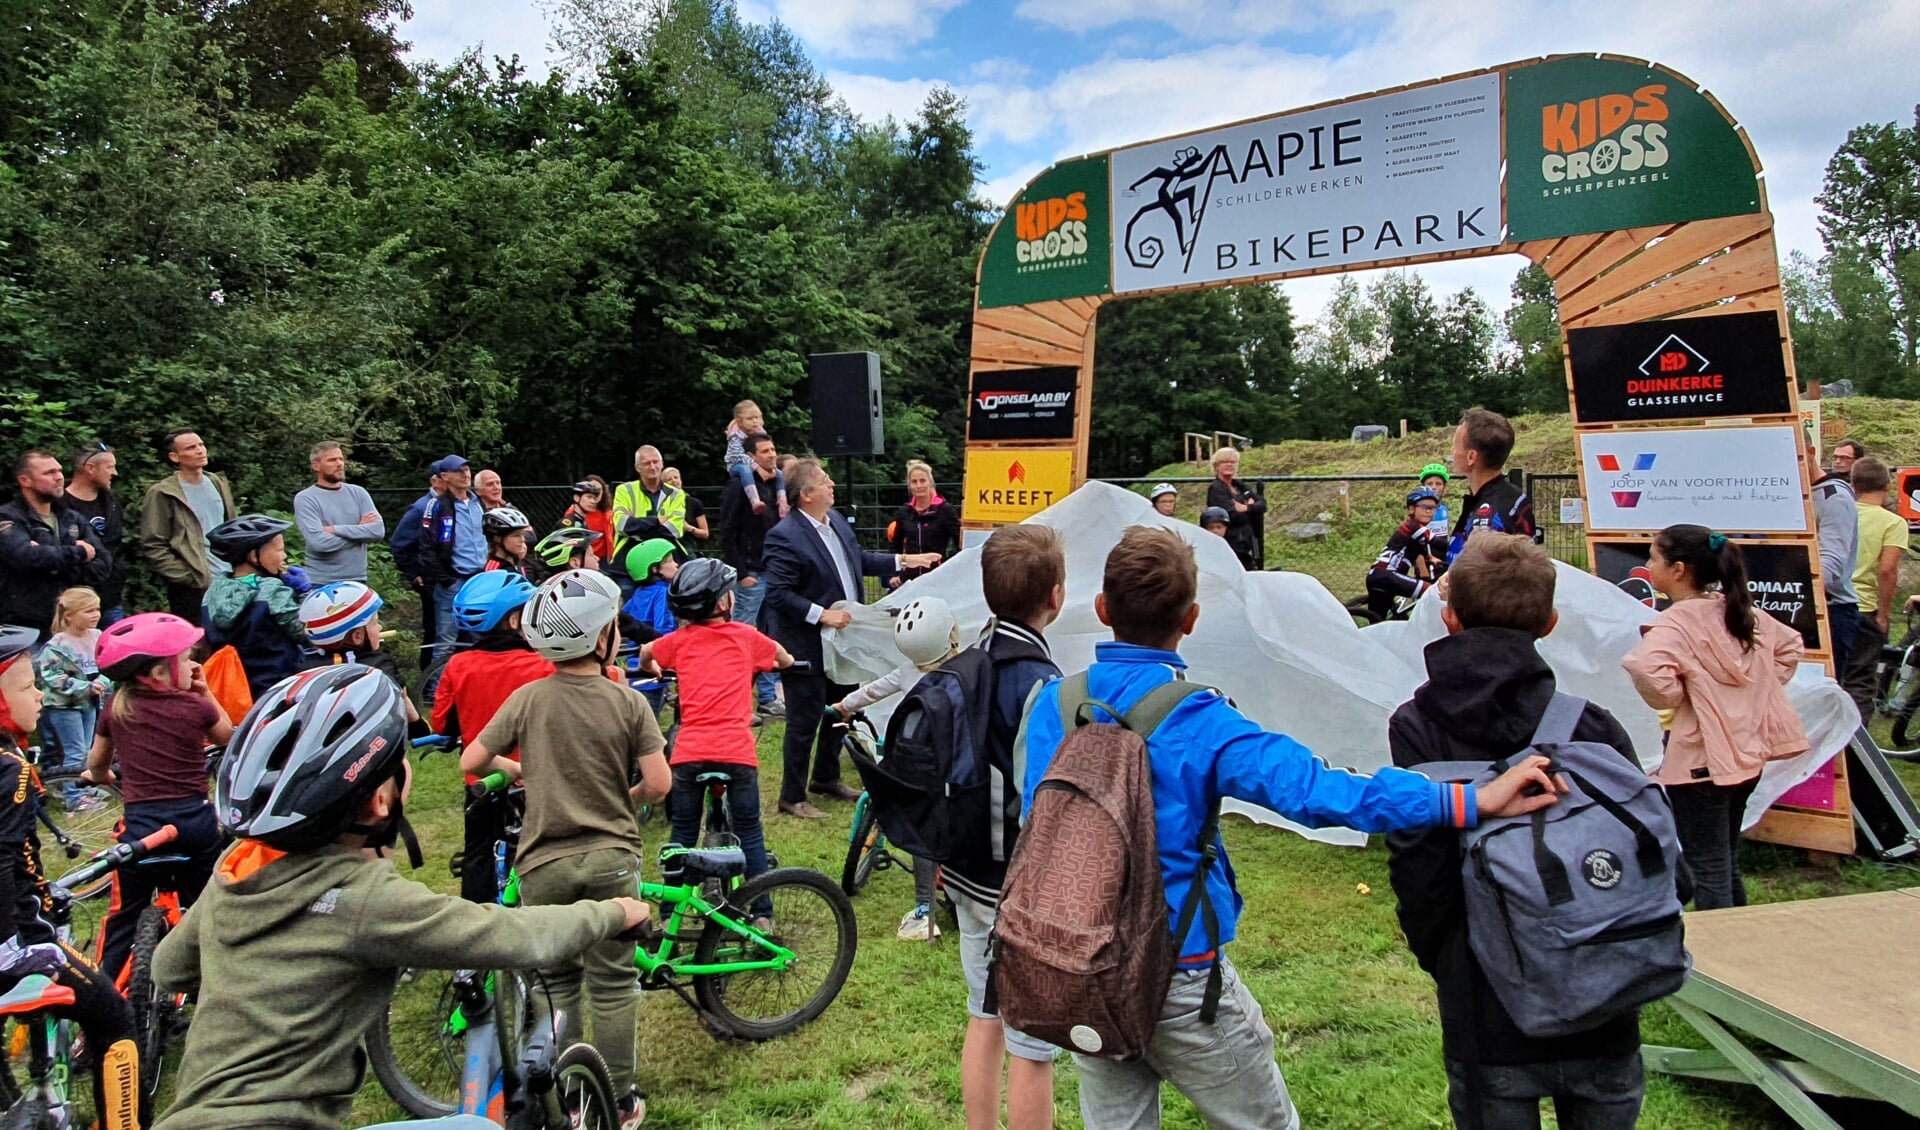 Op 10 juli viert het KidsCross bikepark zijn 1-jarig jubileum. Wethouder Gerard van Deelen opende het park vorig jaar onder grote belangstelling. 